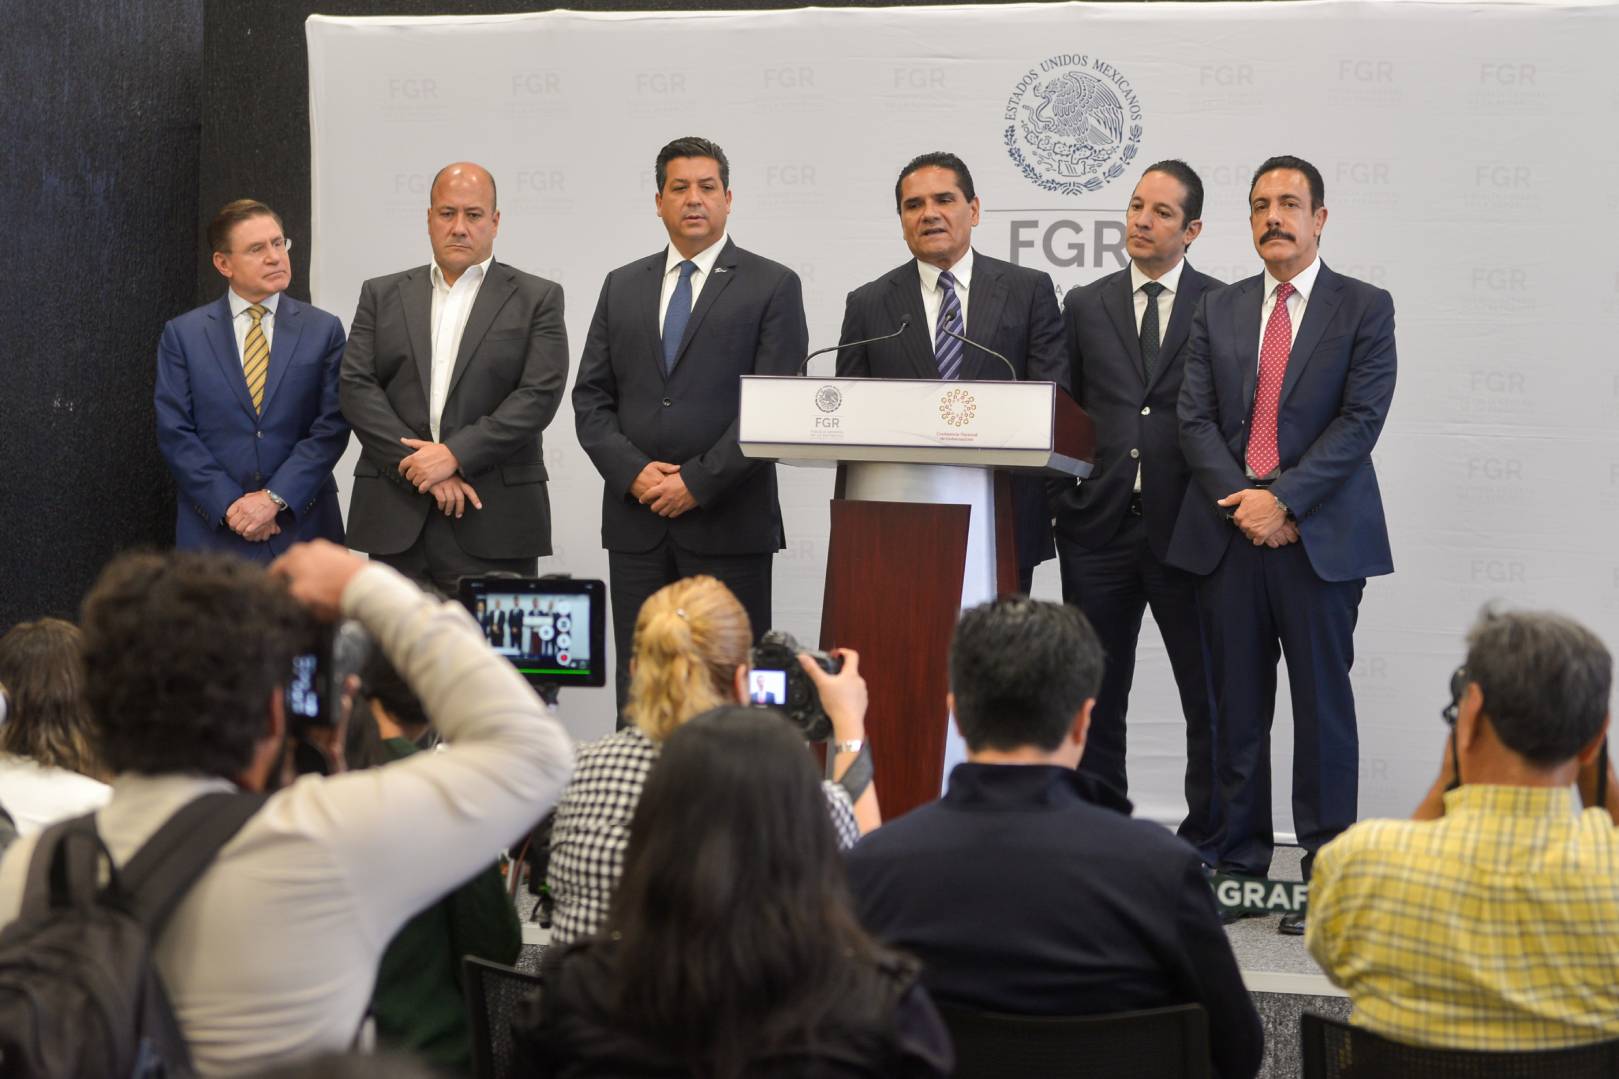 De izquierda a derecha: José Rosas Aispuro, Enrique Alfaro, Silvano Aureoles, Francisco García Cabeza de Vaca, Francisco Domínguez y Omar Fayad. (Foto: Cuartoscuro)